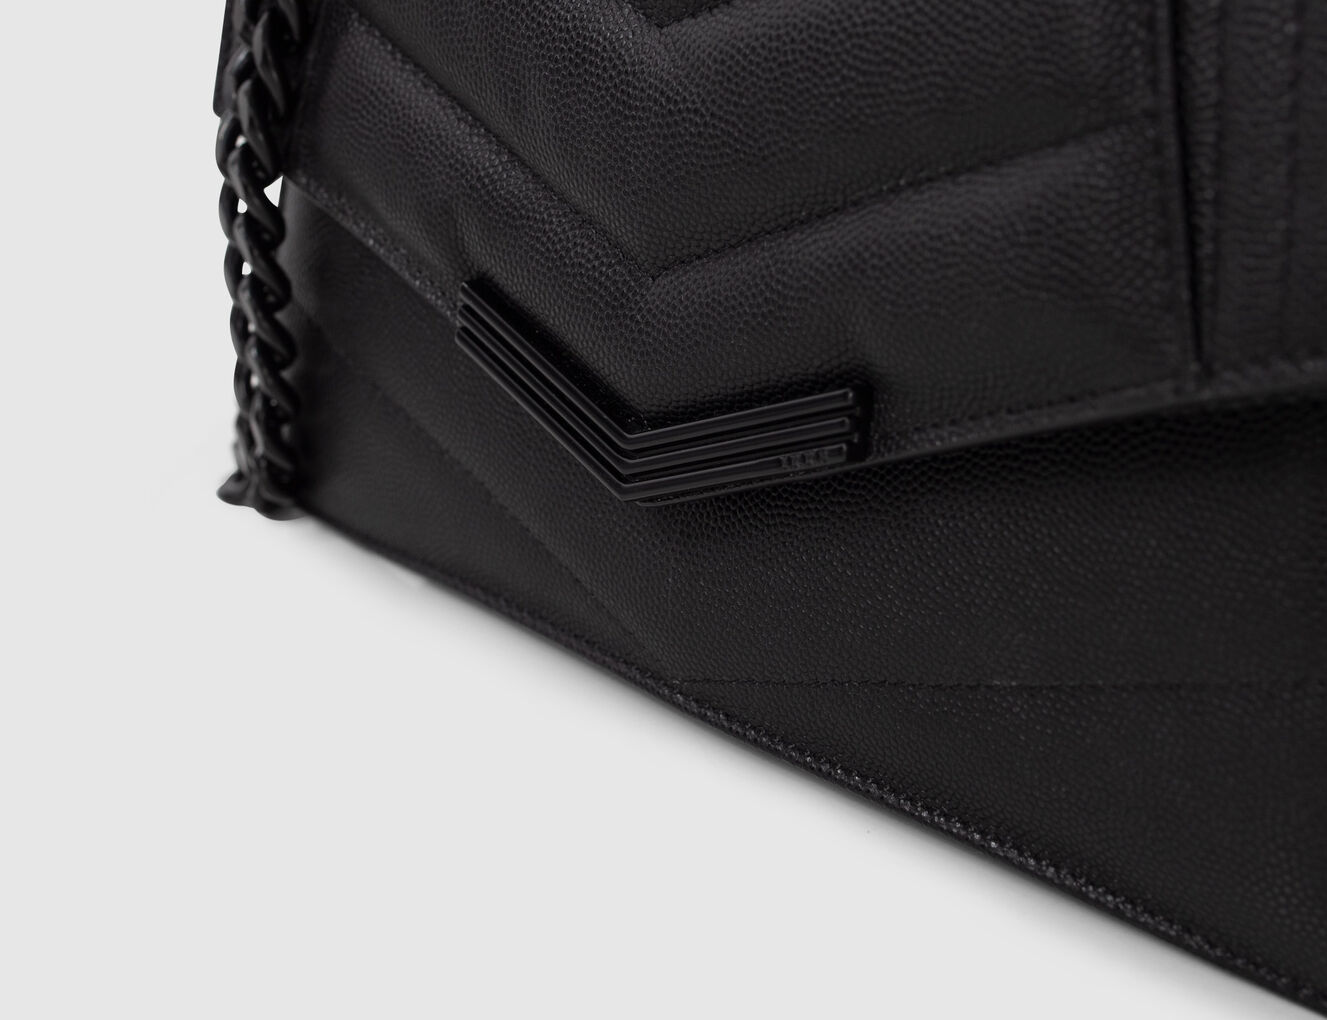 Damentasche THE 1 aus schwarzem Leder Größe S - IKKS-4